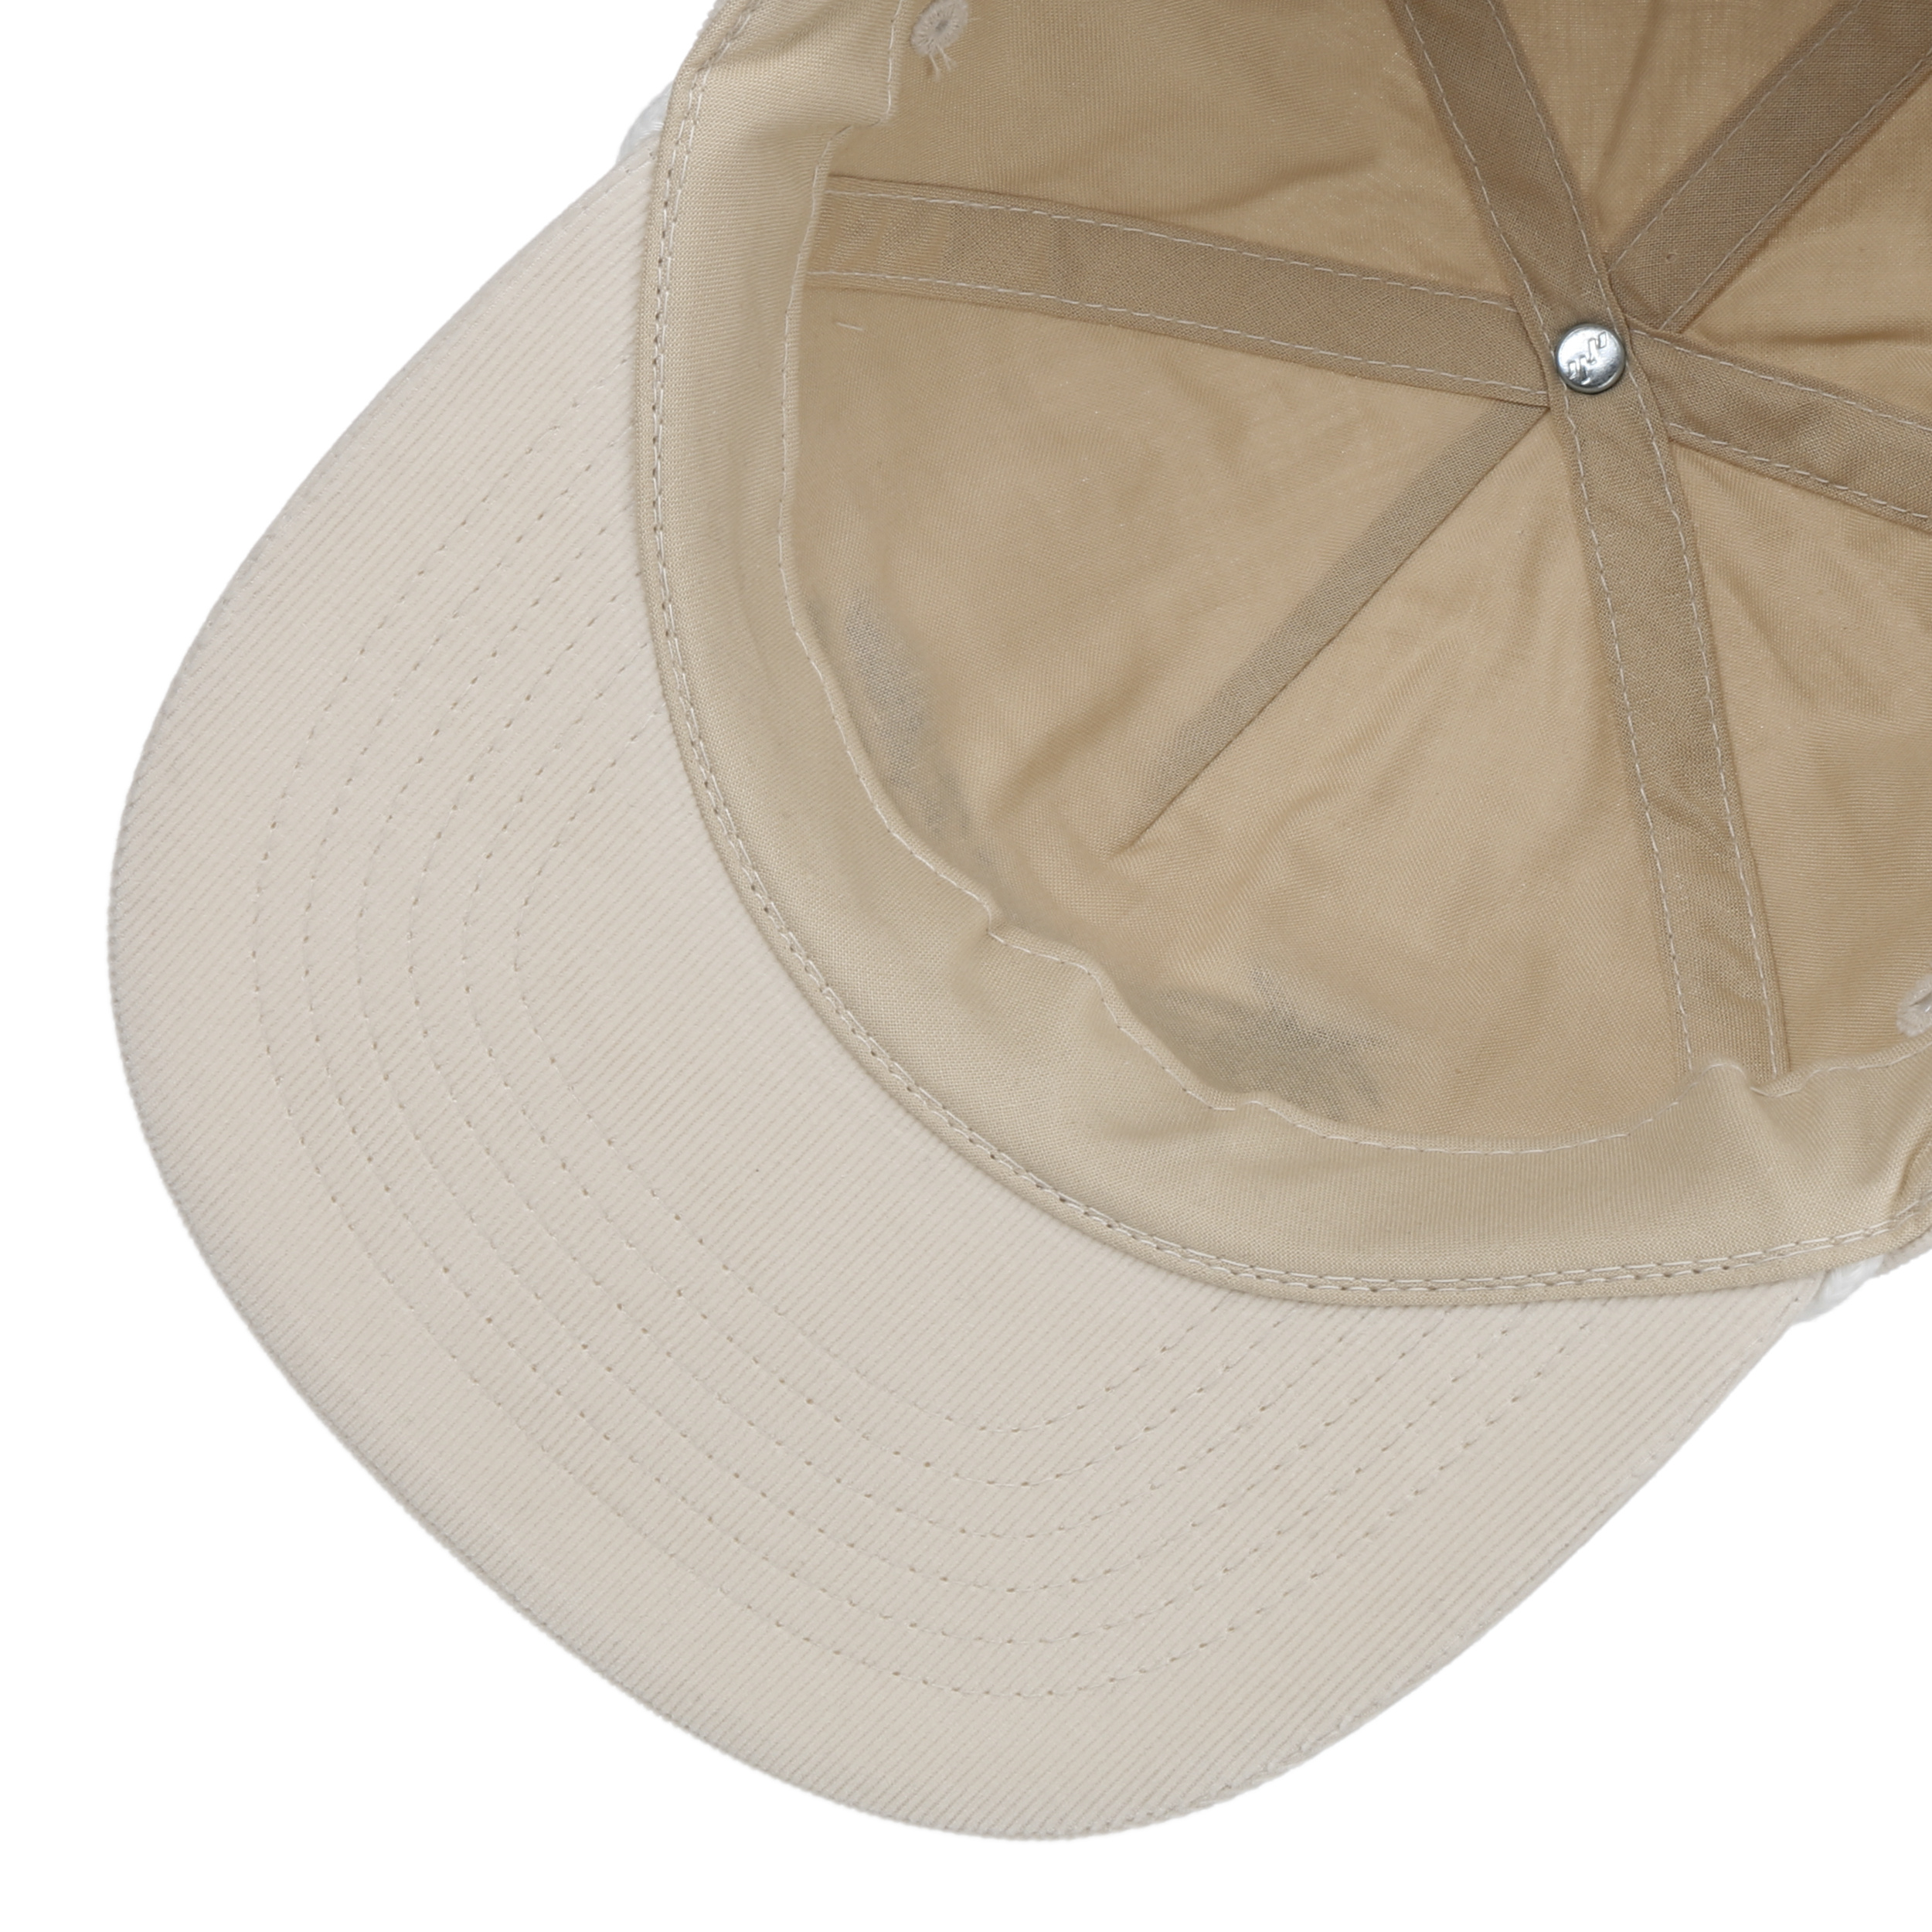 Lanly Cappello da baseball regolabile unisex uomo donna cotone protezione UV cappello da baseball cappello da sole cappello da escursionismo